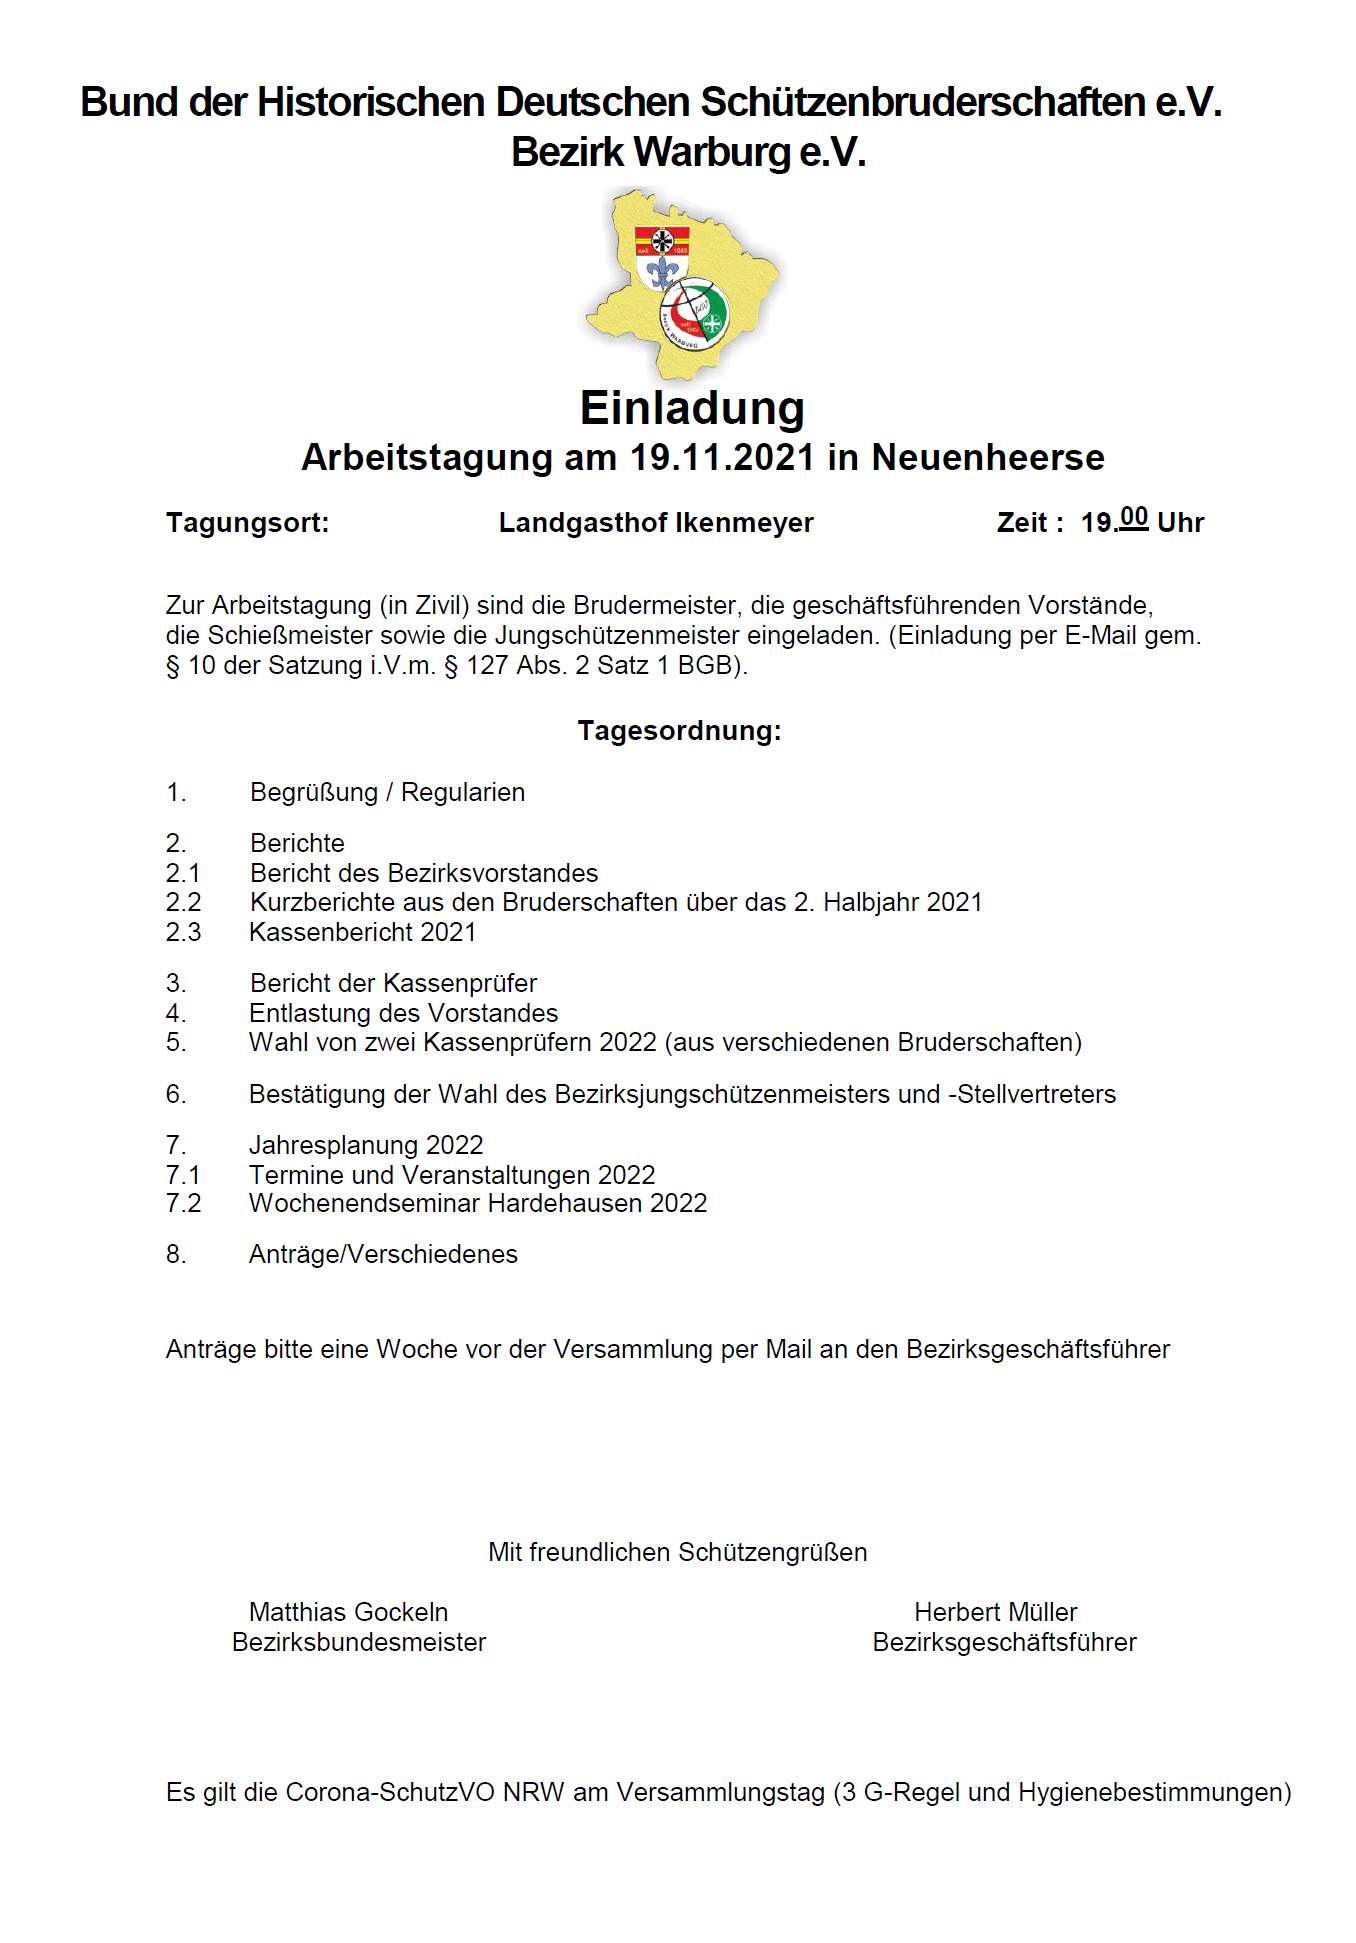 Arbeitstagung am 19.11.2021 in Neuenheerse